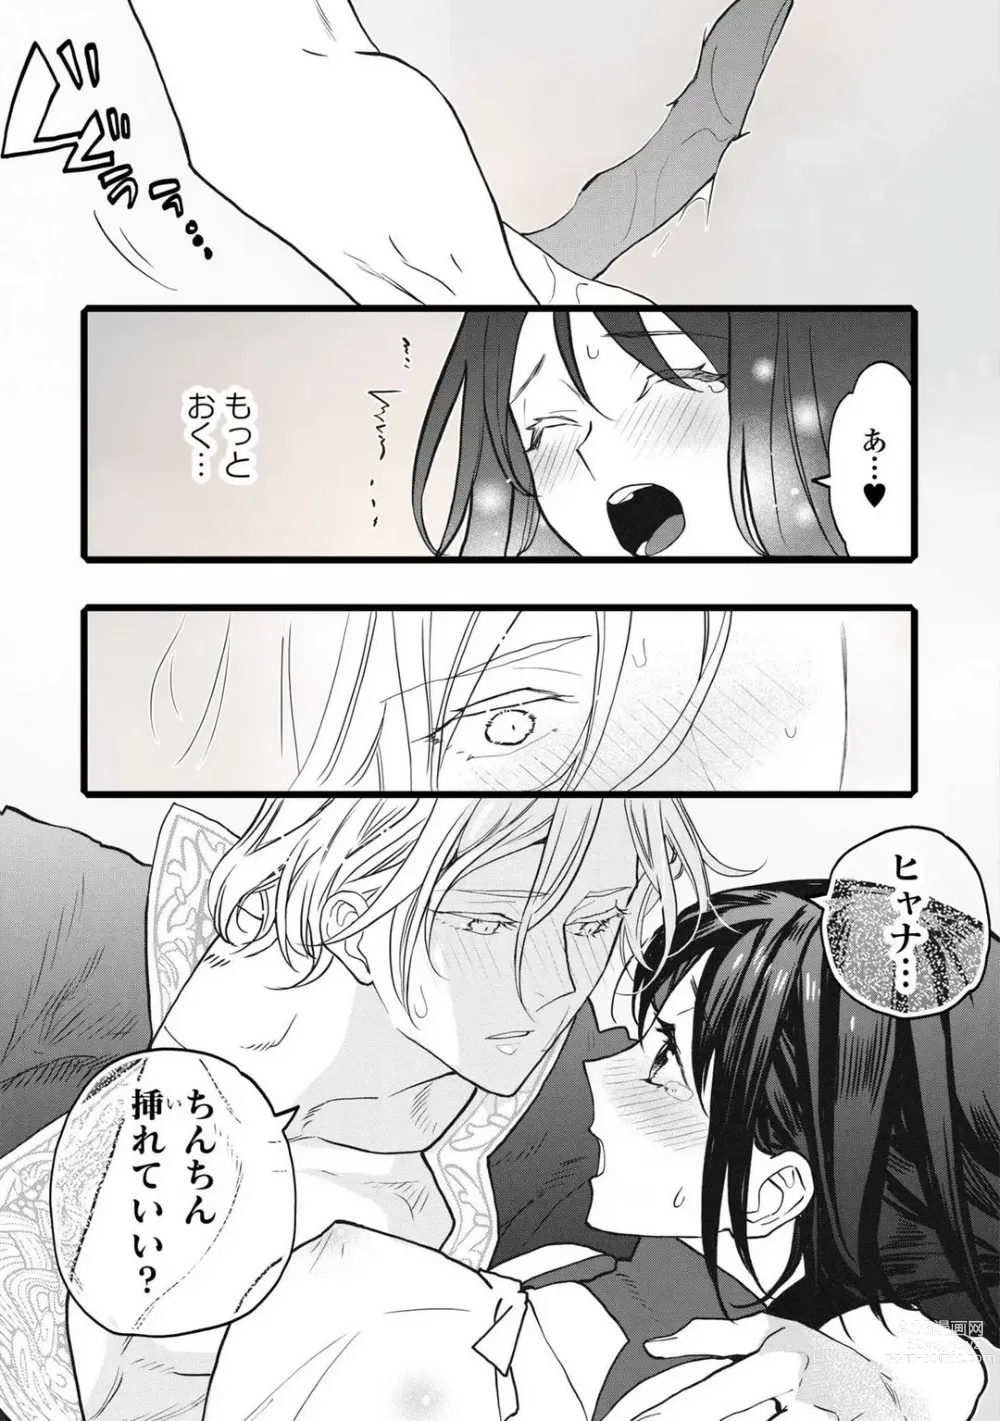 Page 201 of manga Koisuru Himon no Senshi-Tachi 1-6